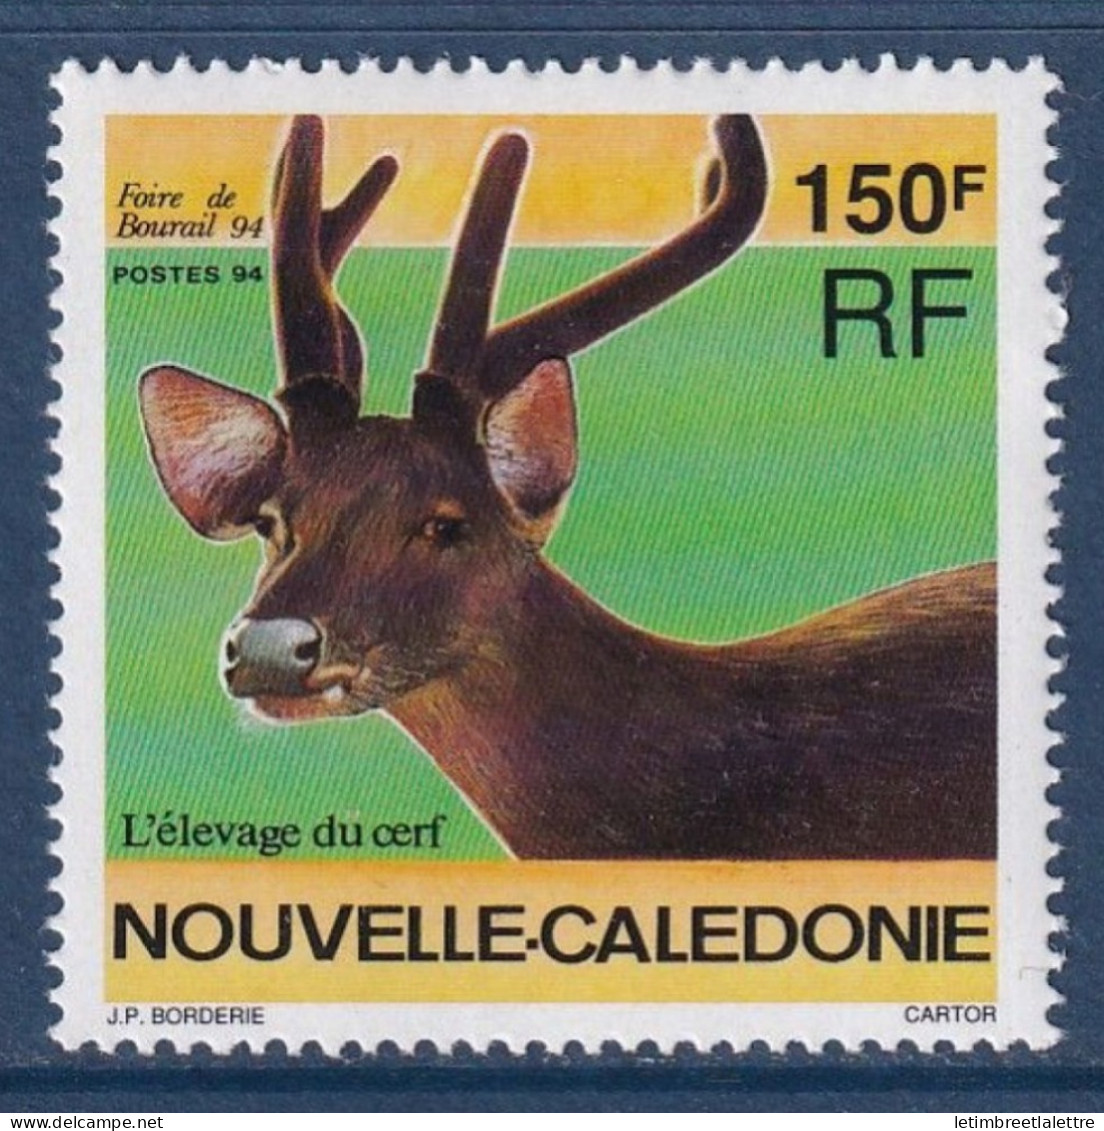 Nouvelle Calédonie - YT N° 664 ** -  Neuf Sans Charnière - 1994 - Unused Stamps